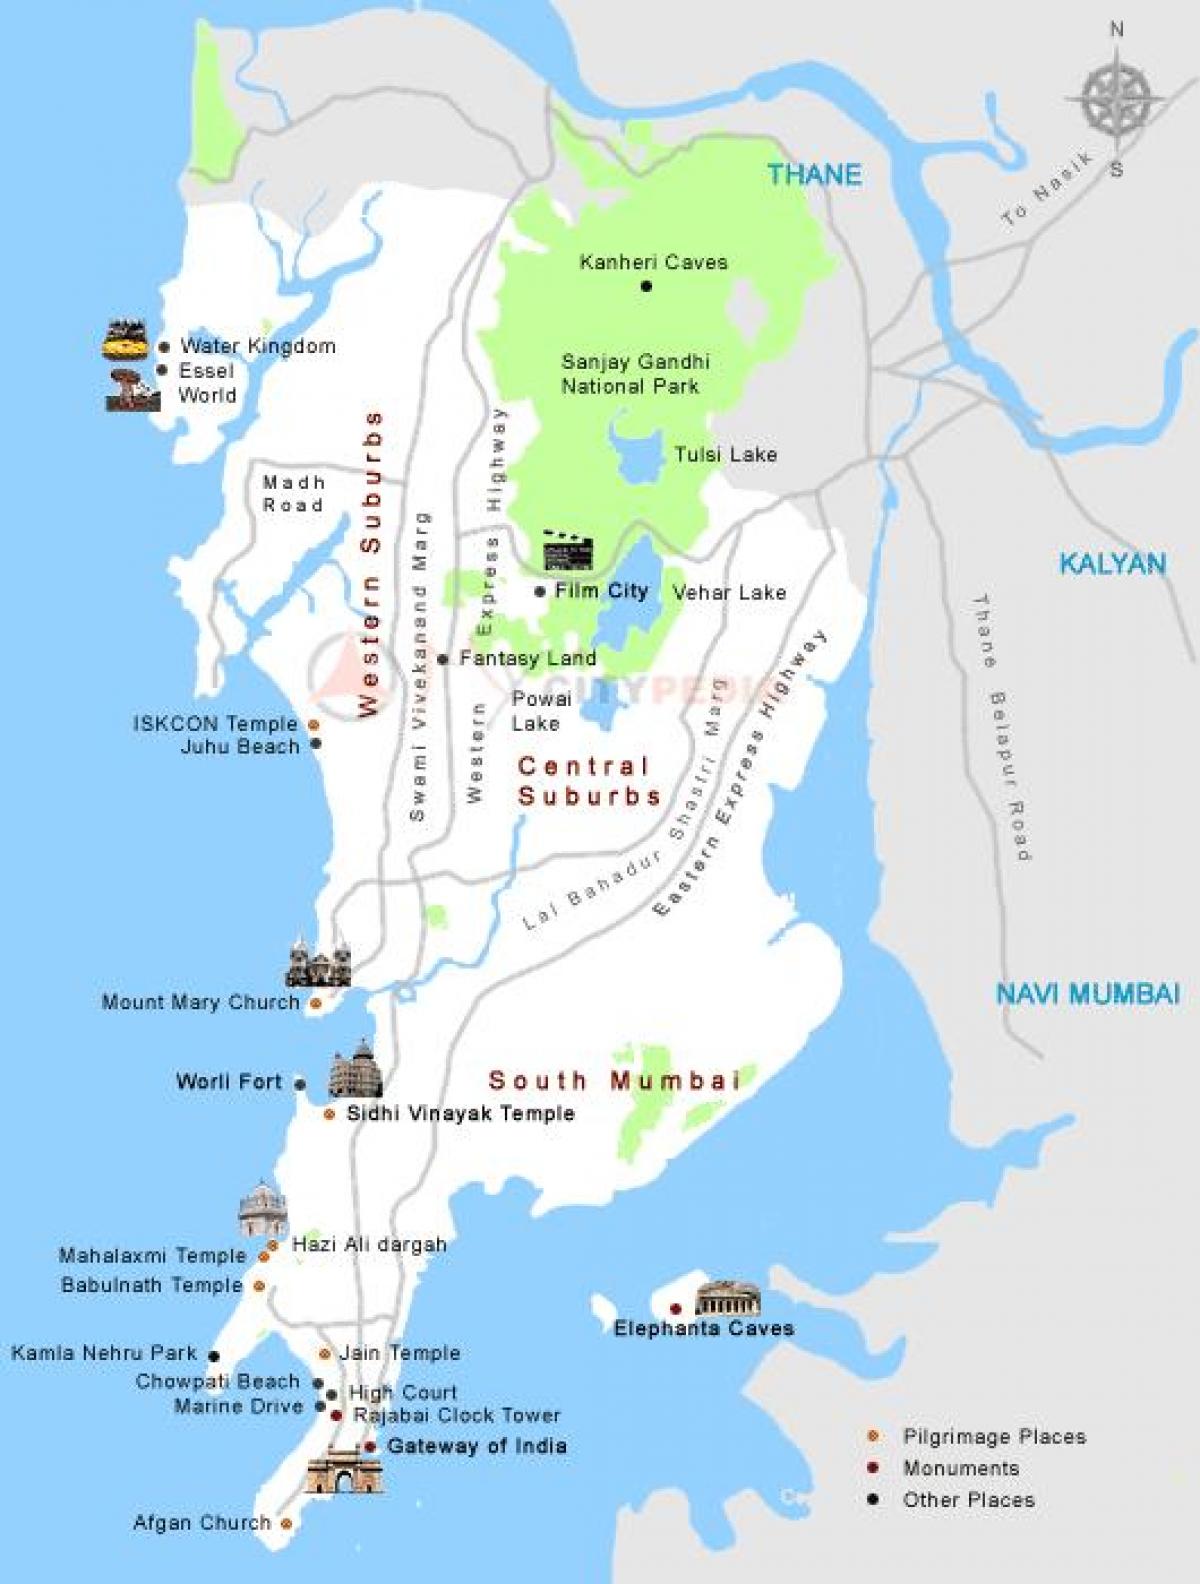 मुंबई दर्शन के स्थानों के नक्शे